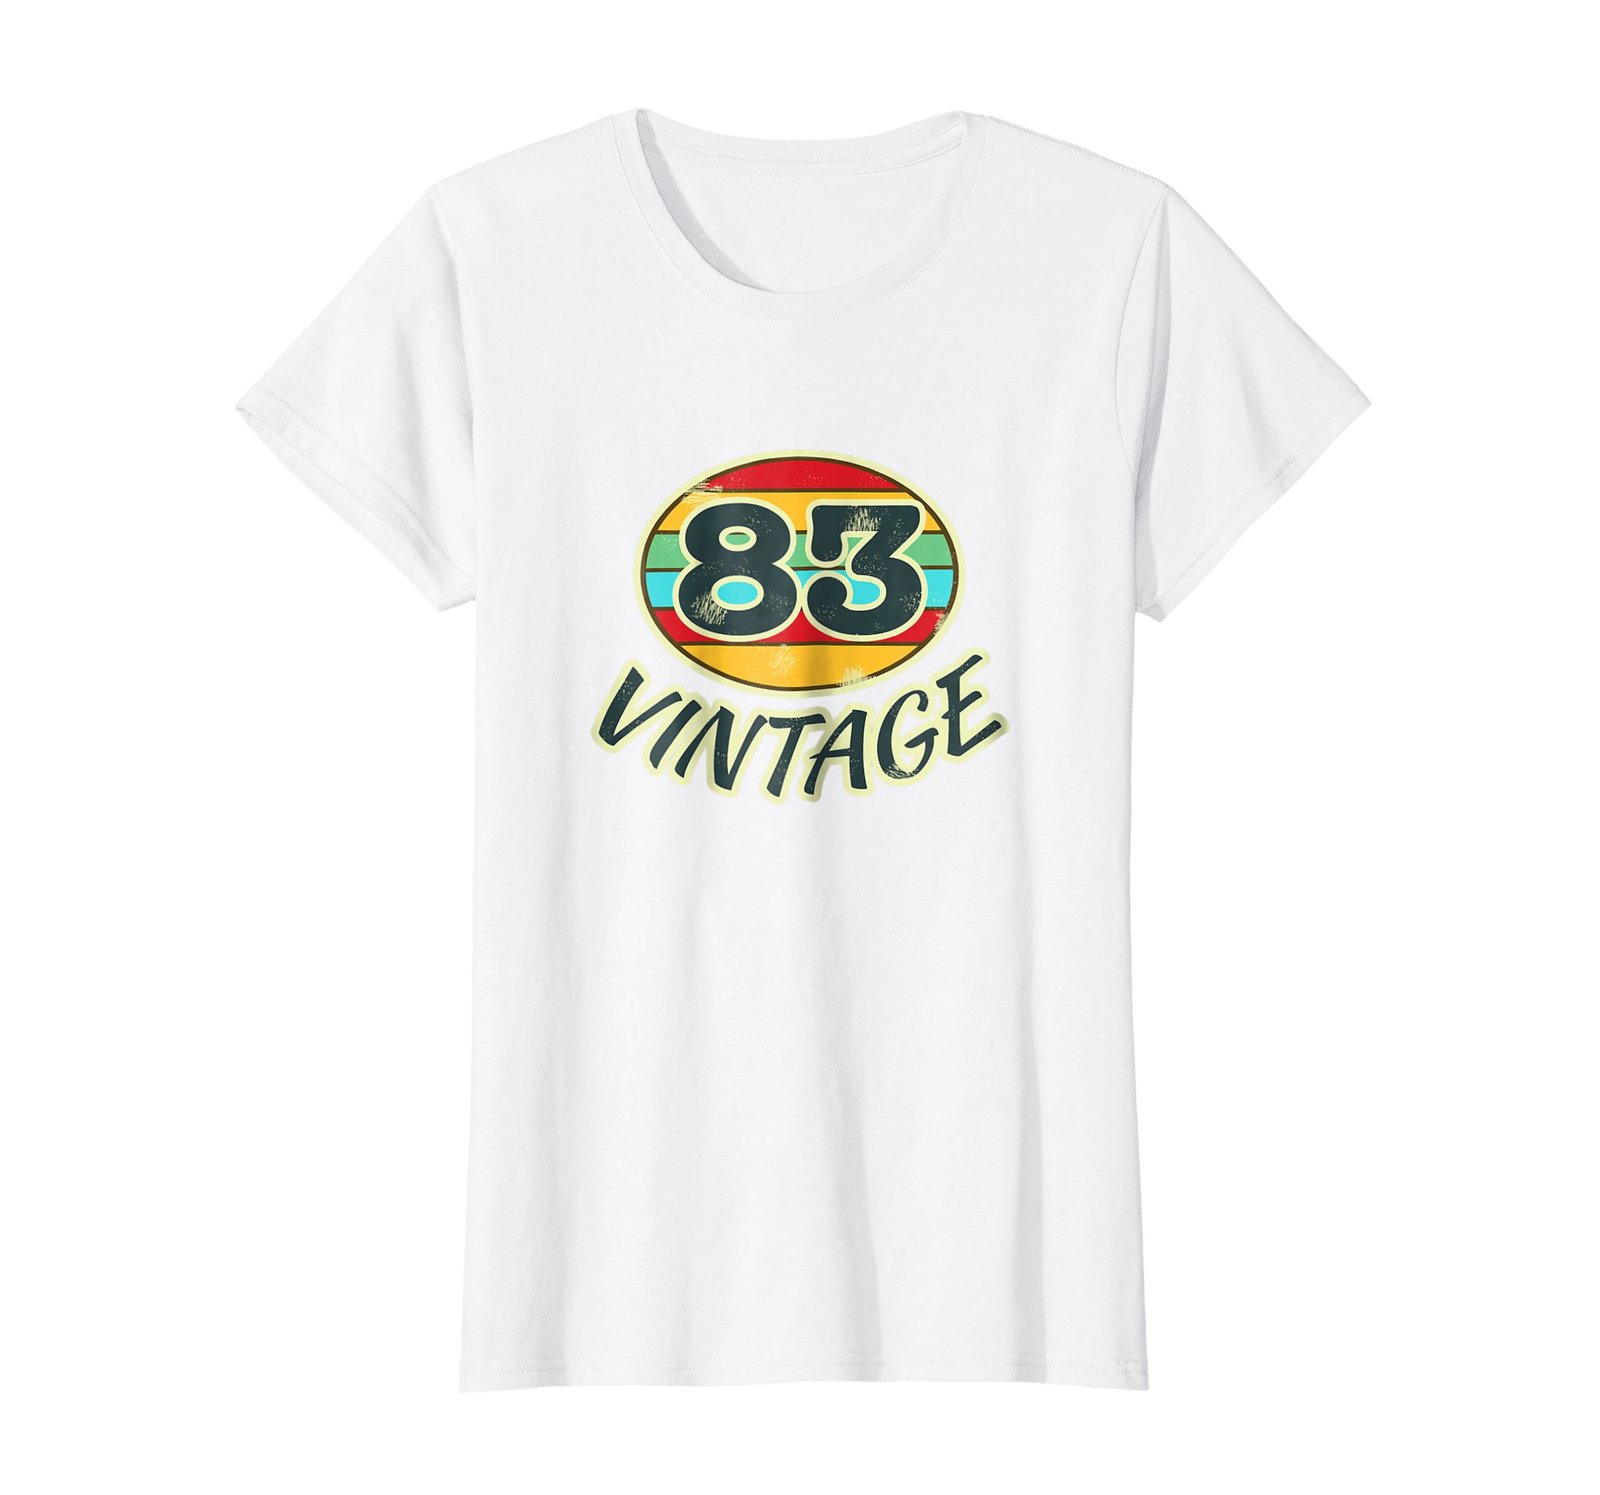 Funny Shirts - DOB 1983 TShirt Vintage Retro 83 Birth Year Tee Shirt Wowen